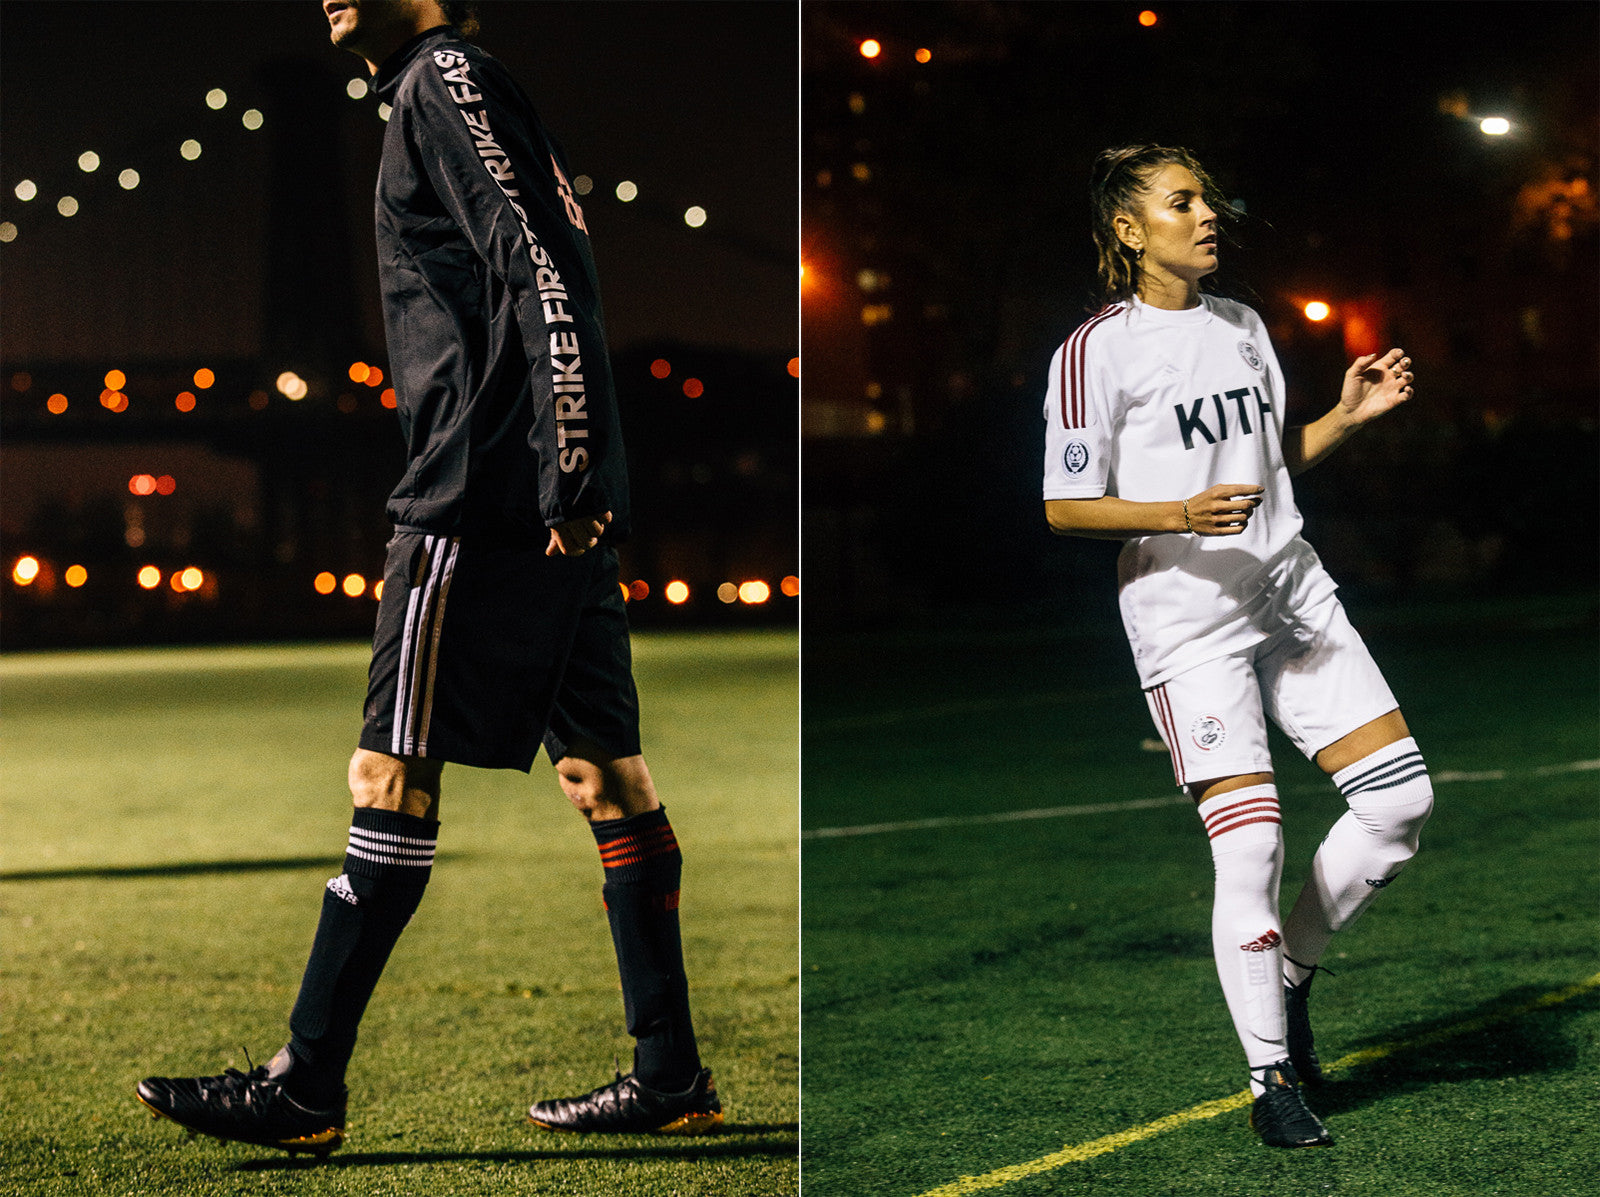 kith adidas soccer